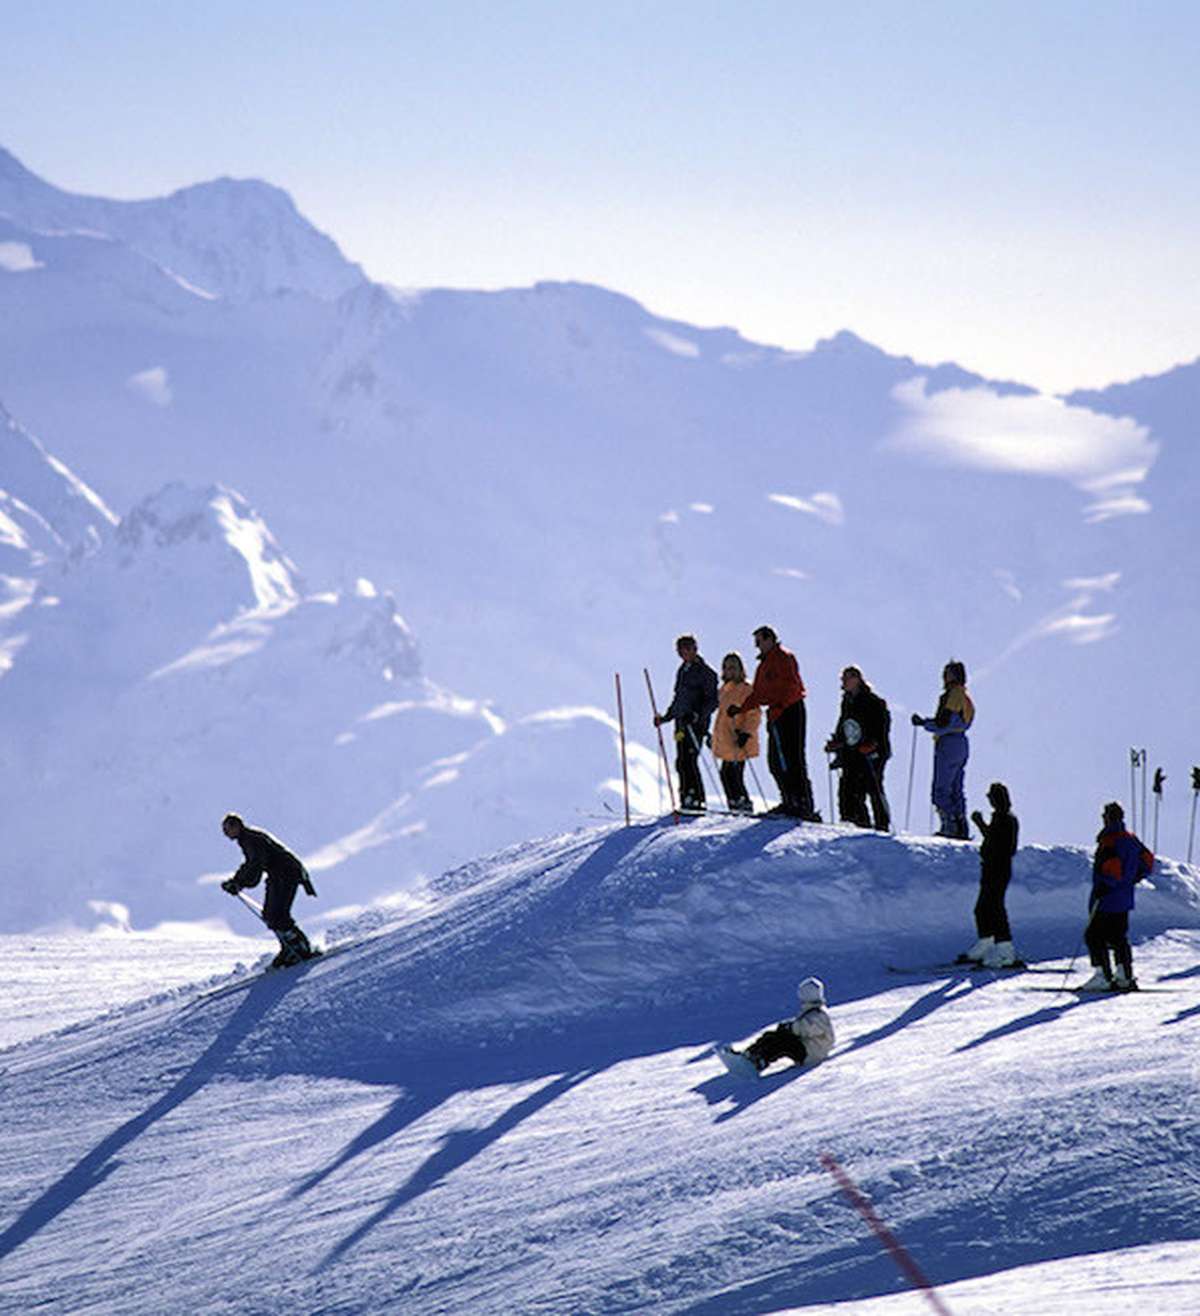 Skigebiete äussern sich vorsichtig optimistisch